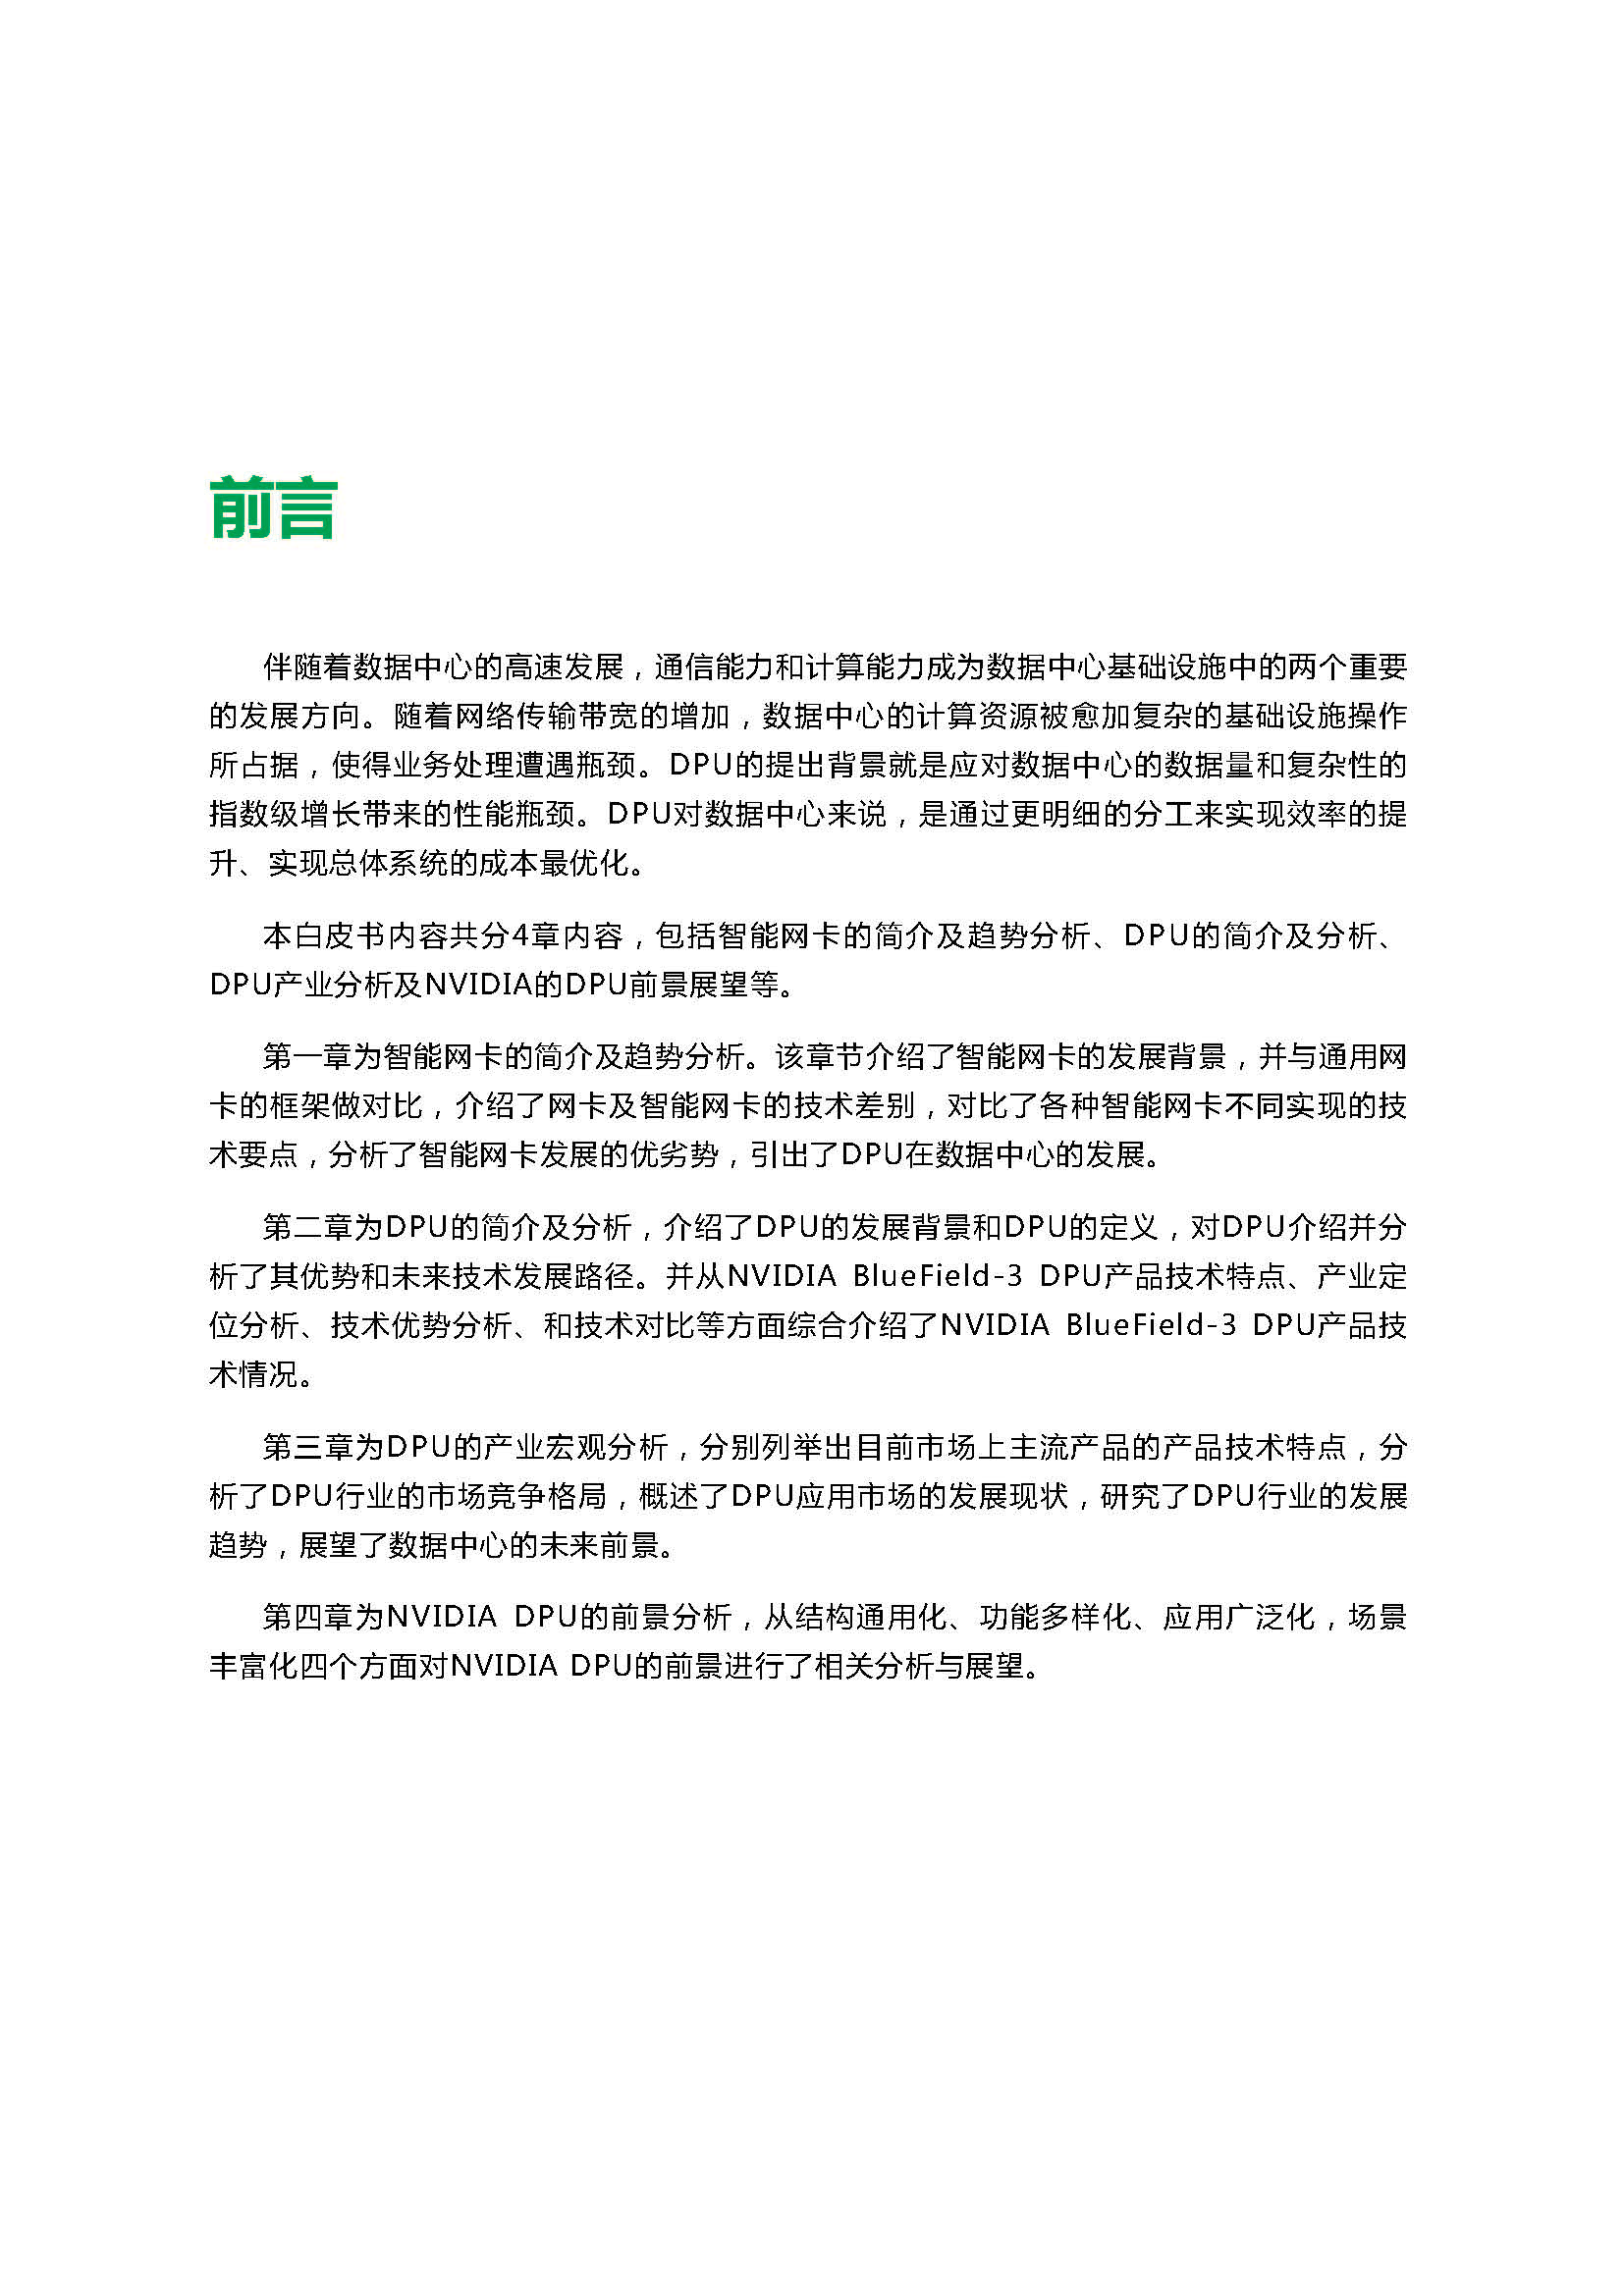 2021中国DPU行业发展白皮书